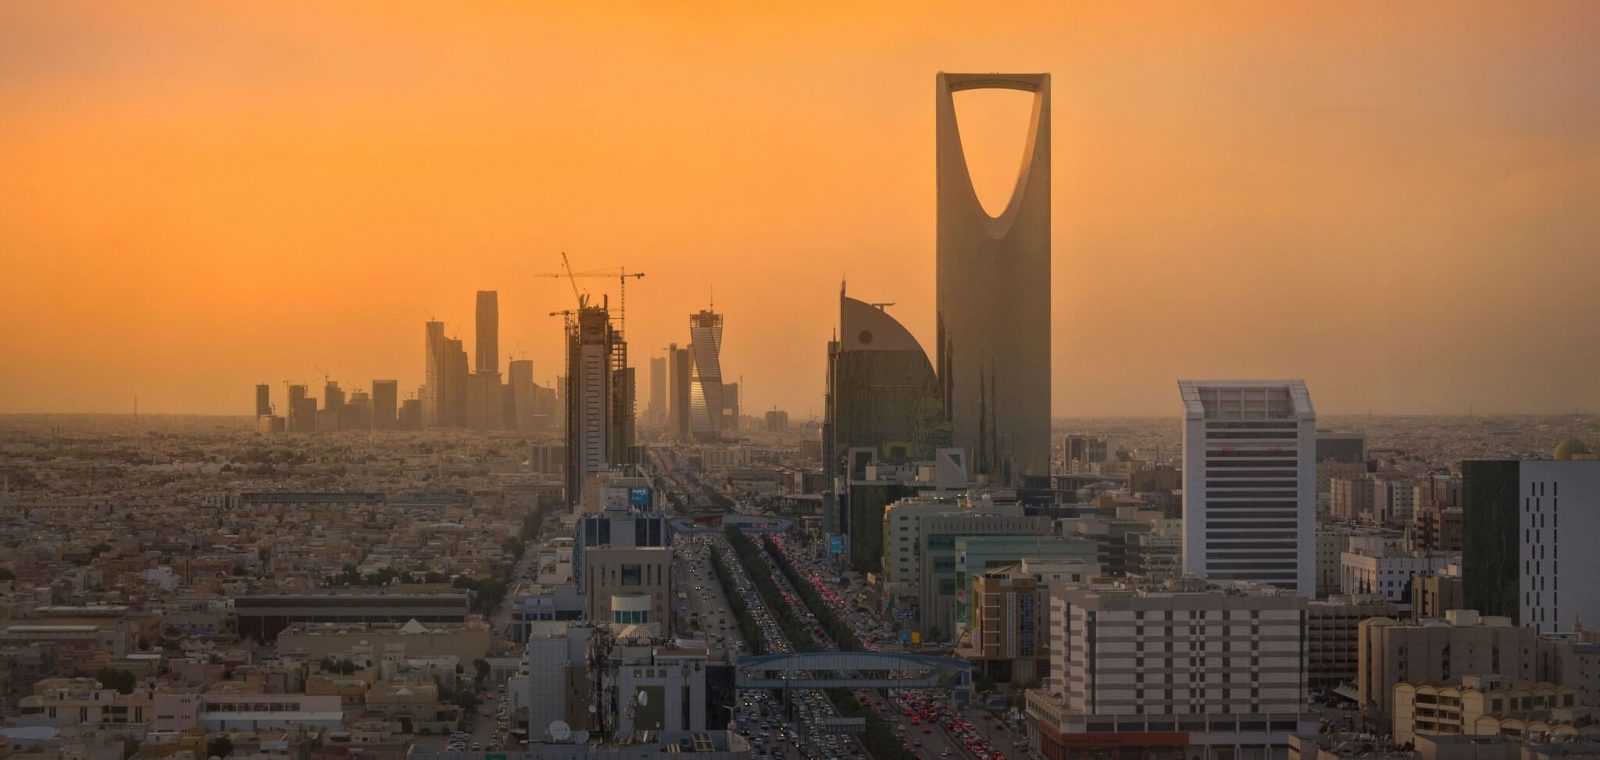 Ả Rập Saudi: Giao dịch tiền điện tử là bất hợp pháp